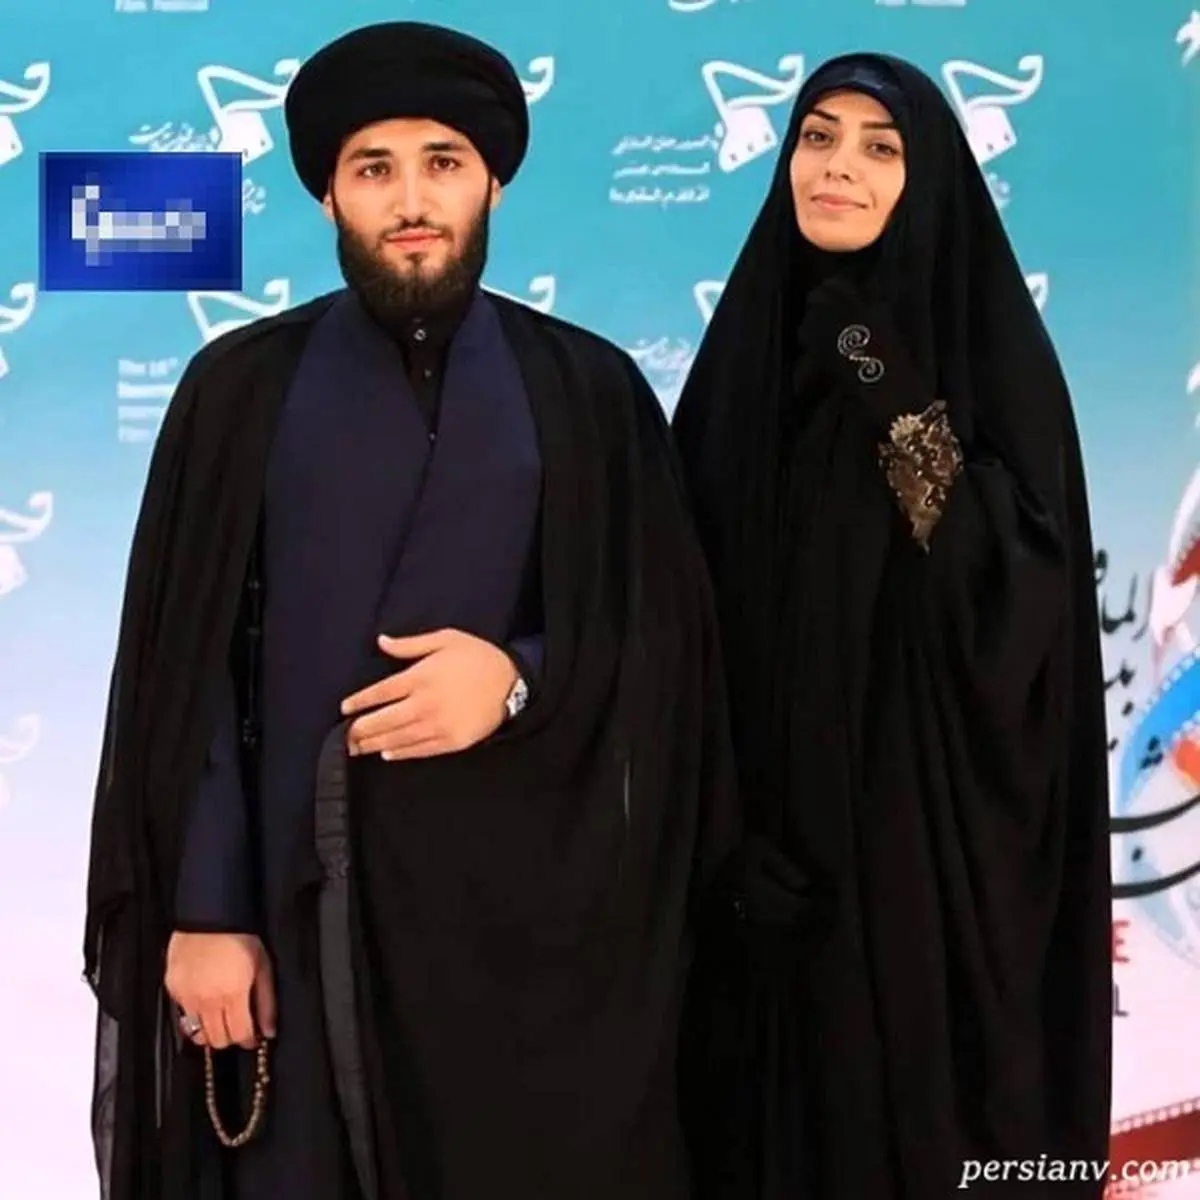 عاشقانه های الهام چرخنده و همسرش شبکه های اجتماعی را منفجر کرد + عکس